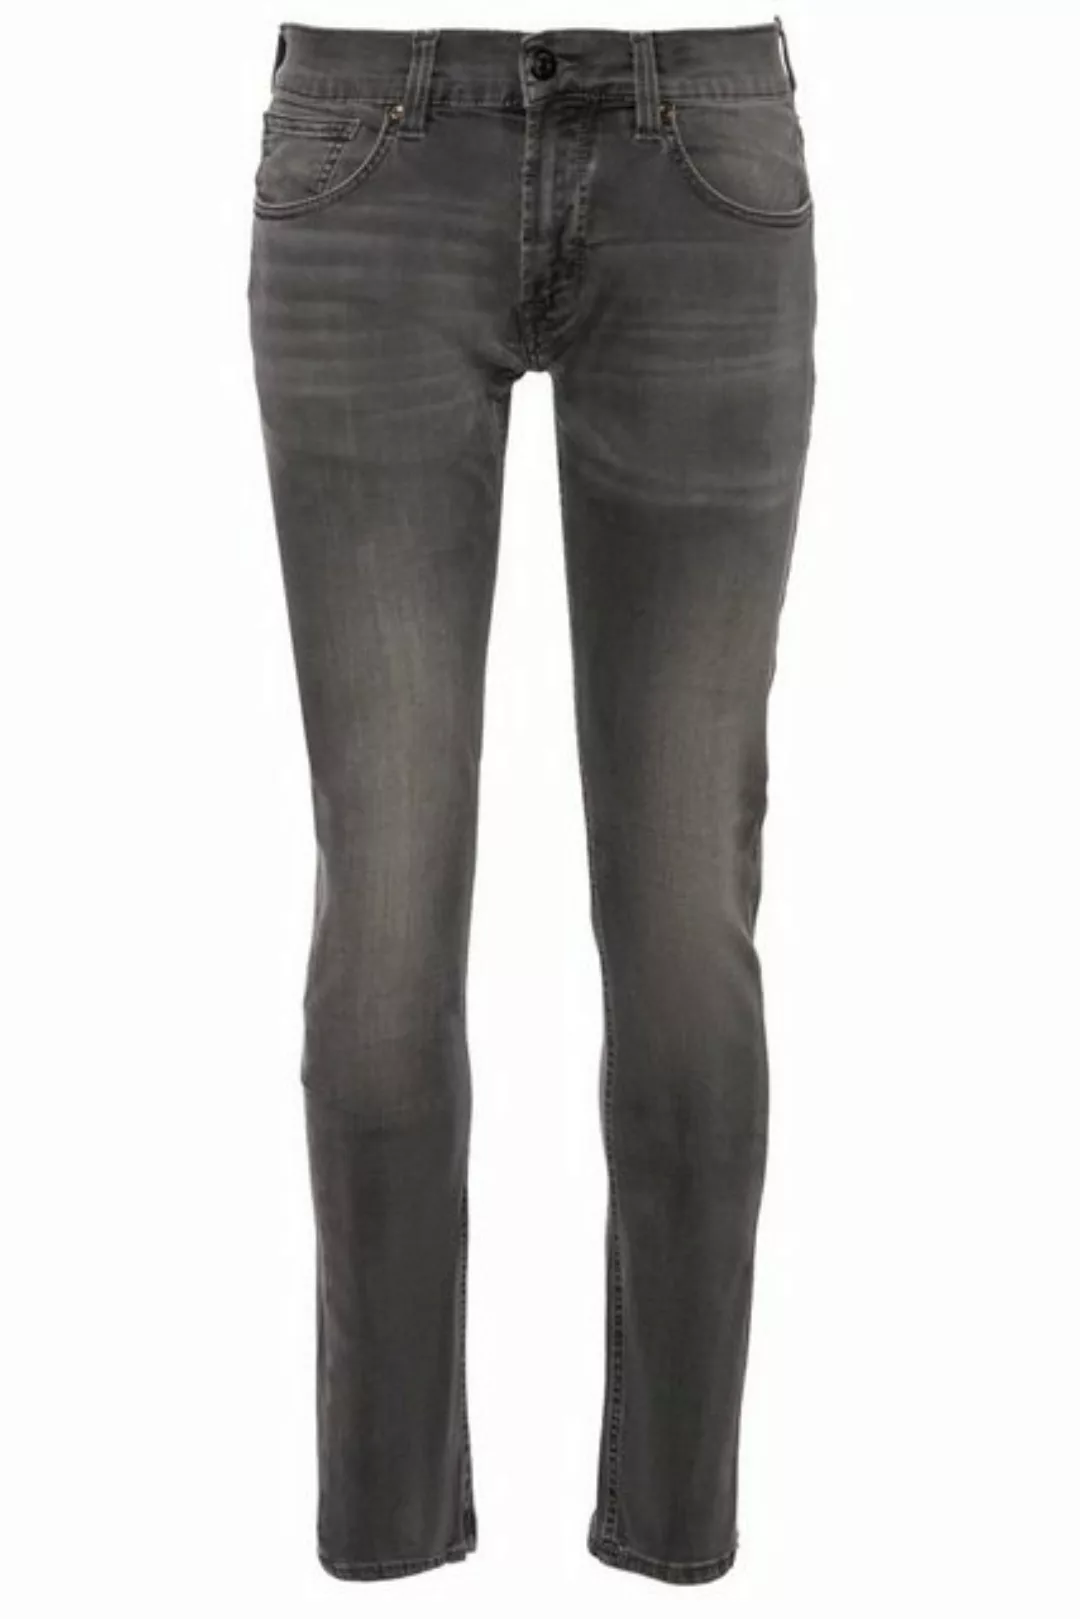 BALDESSARINI Jeans grau B1 16511.1292/9834 günstig online kaufen